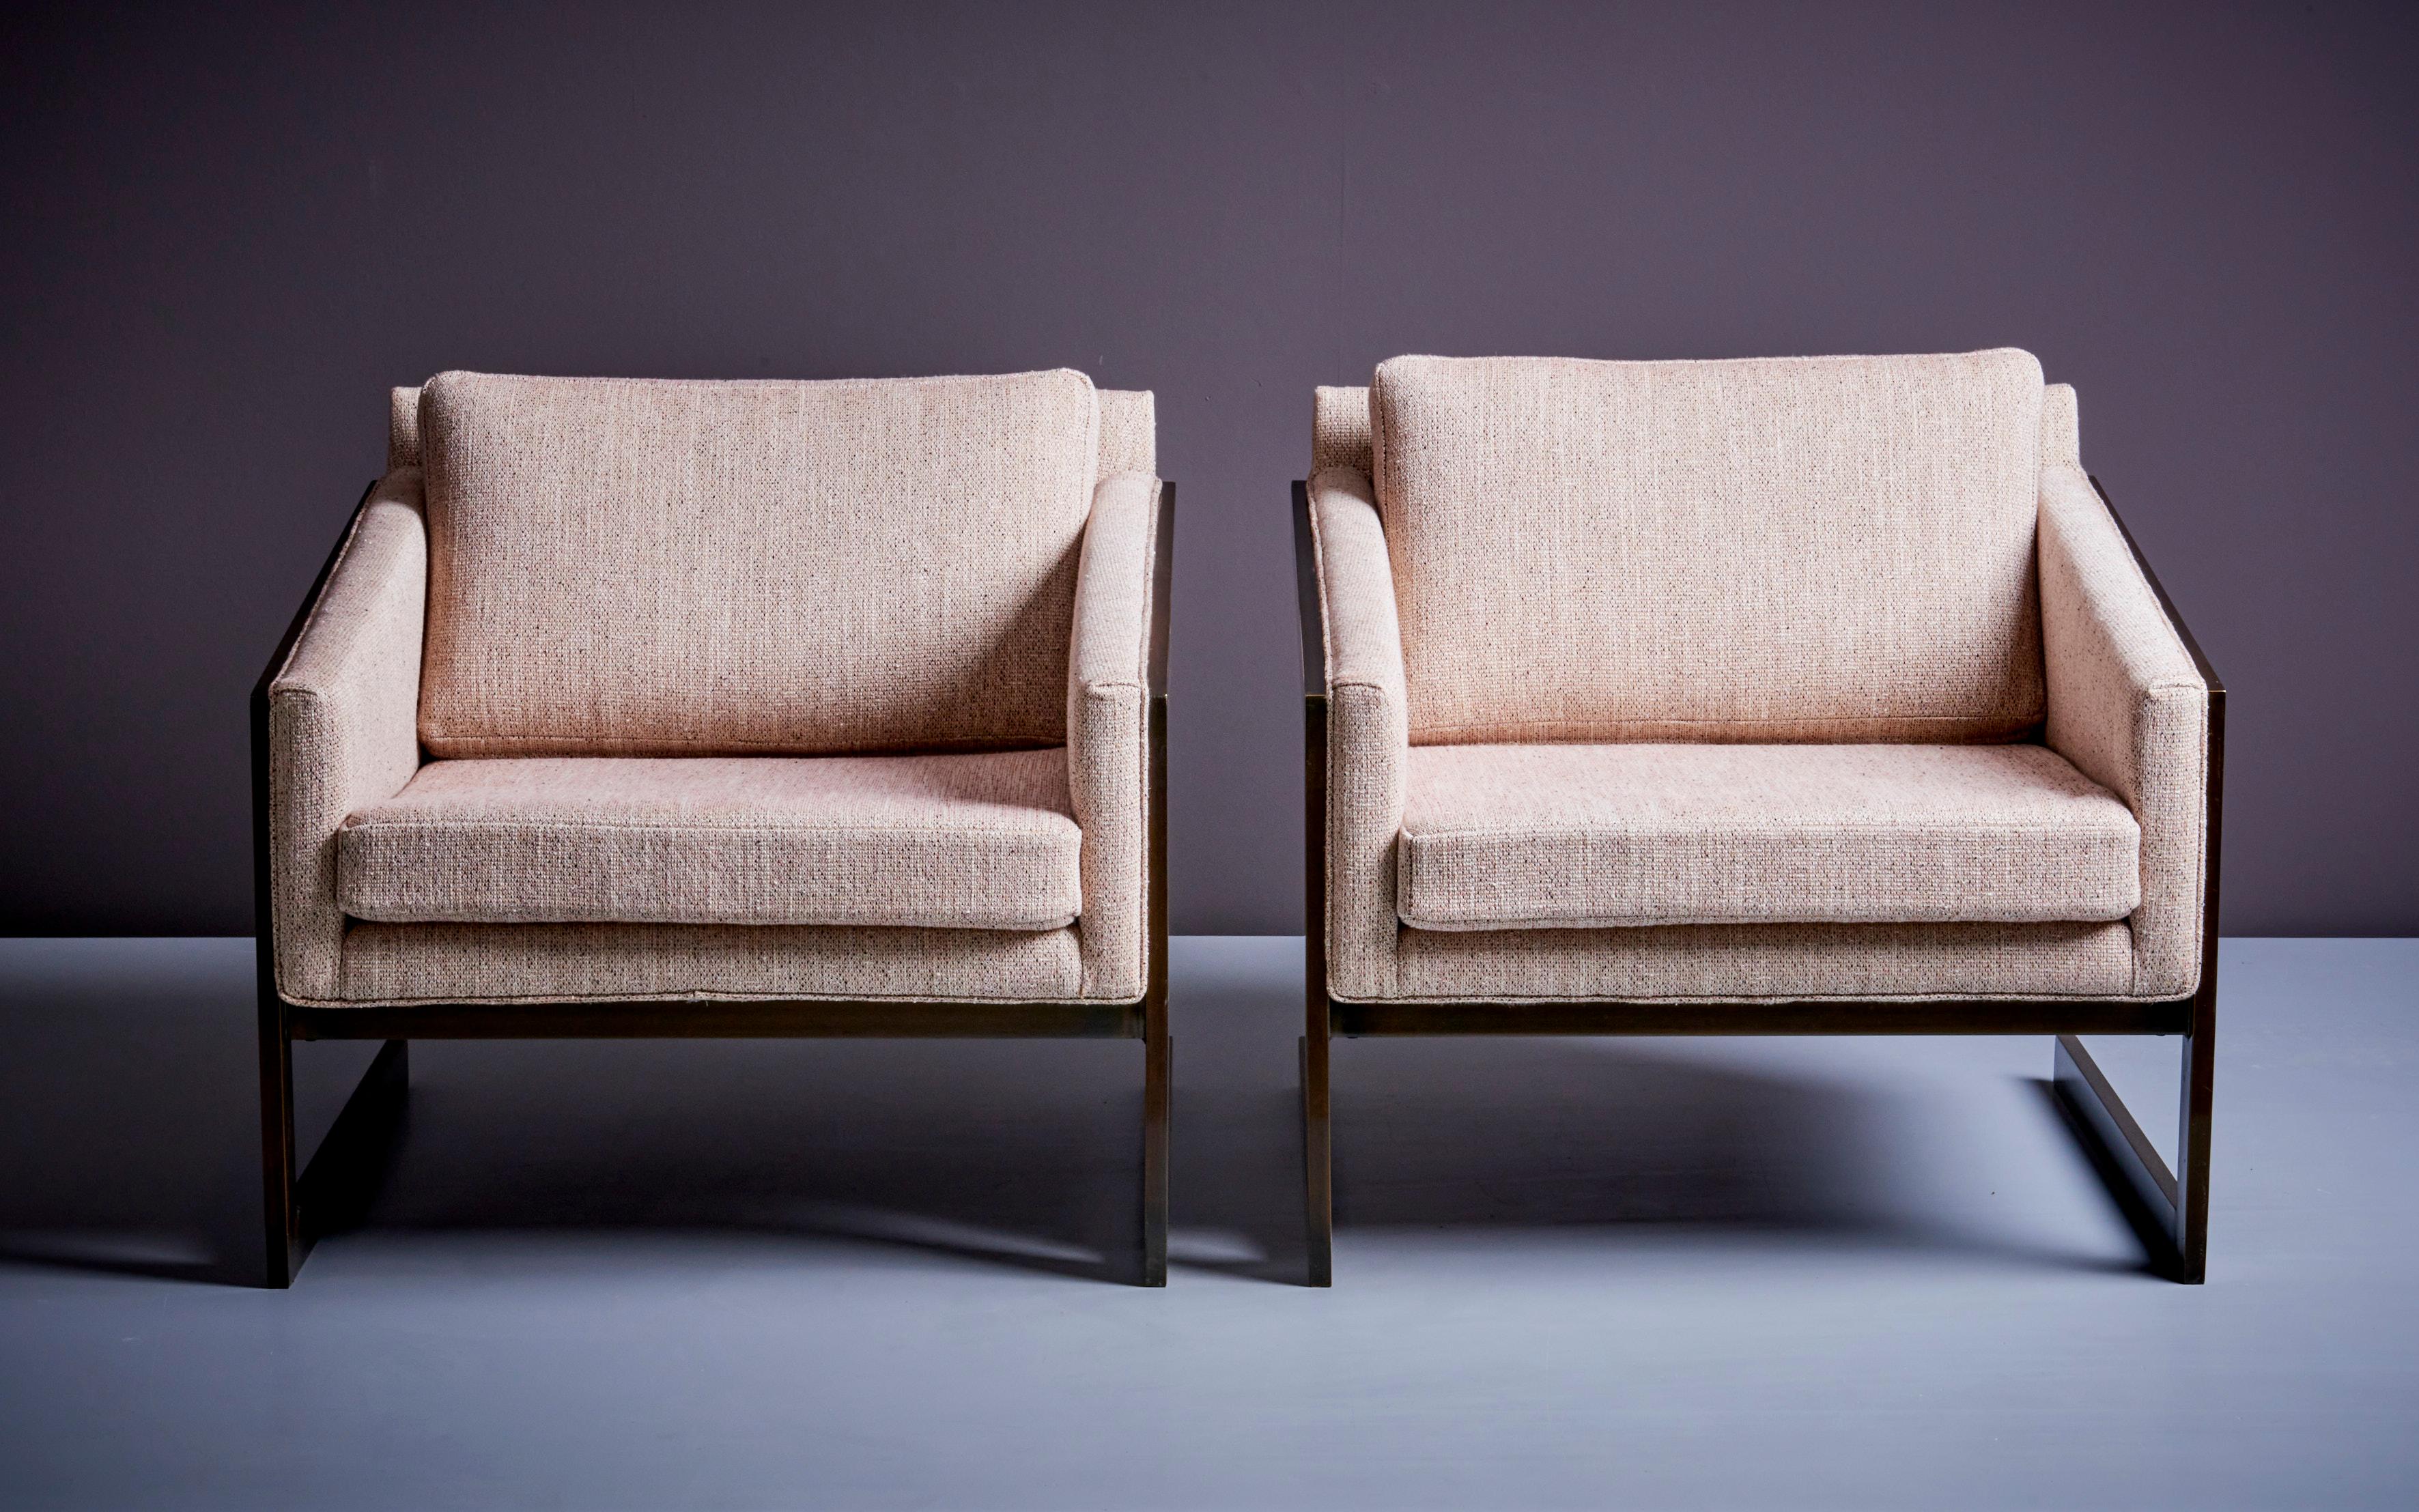 Magnifique paire de chaises longues cantilever de Silver Craft dans un nouveau tissu rembourré et une finition bronze. Rembourré en tissu Chase Erwin.
  